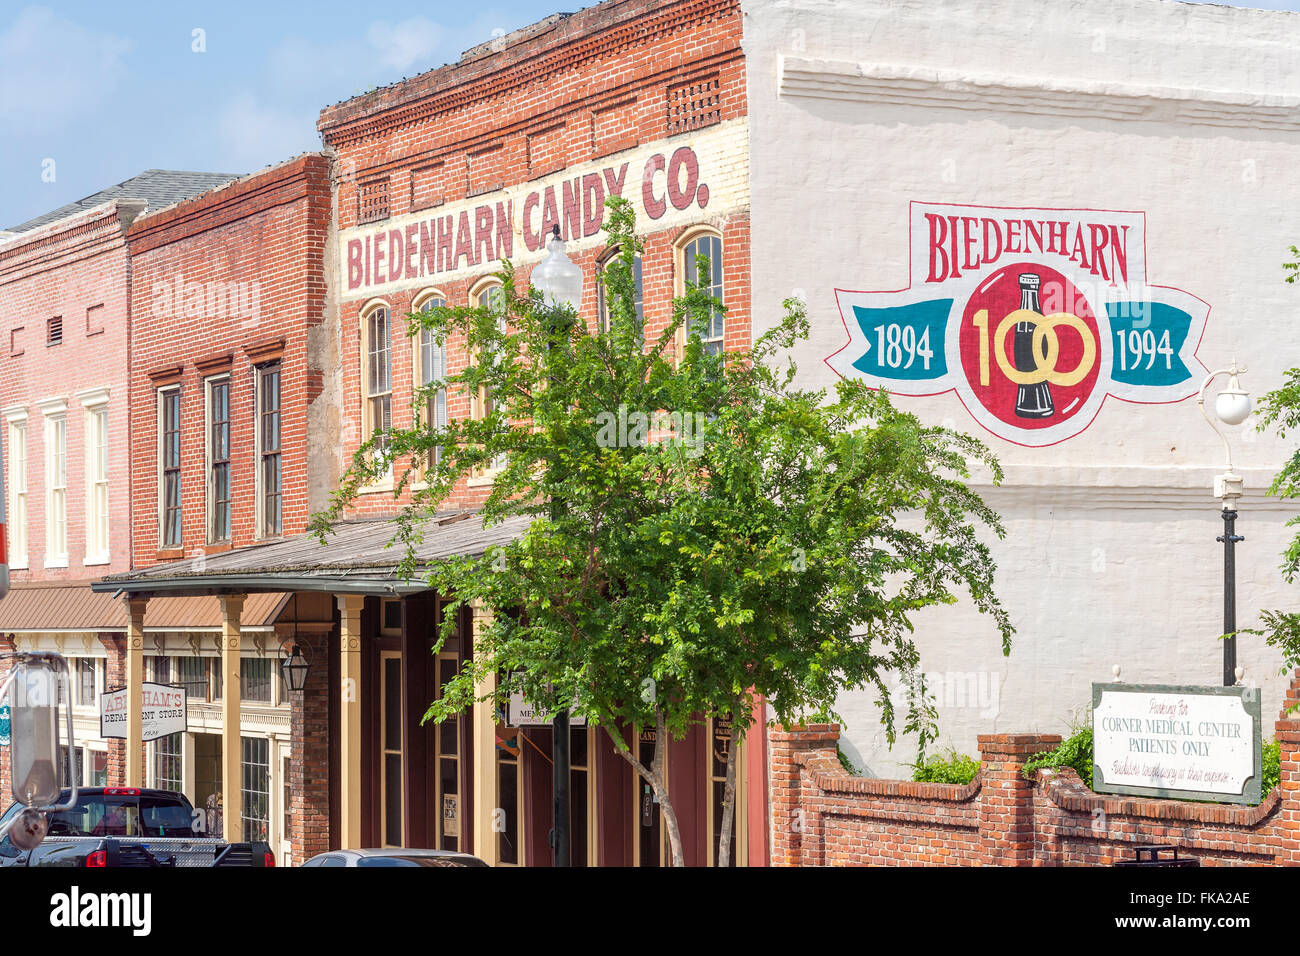 Vicksburg Mississippi, Biedenharn Candy Co, dem Geburtsort des Geschäftsmodells von Coca Cola. Jetzt das Biedenharn Coca-Cola Museum. Stockfoto